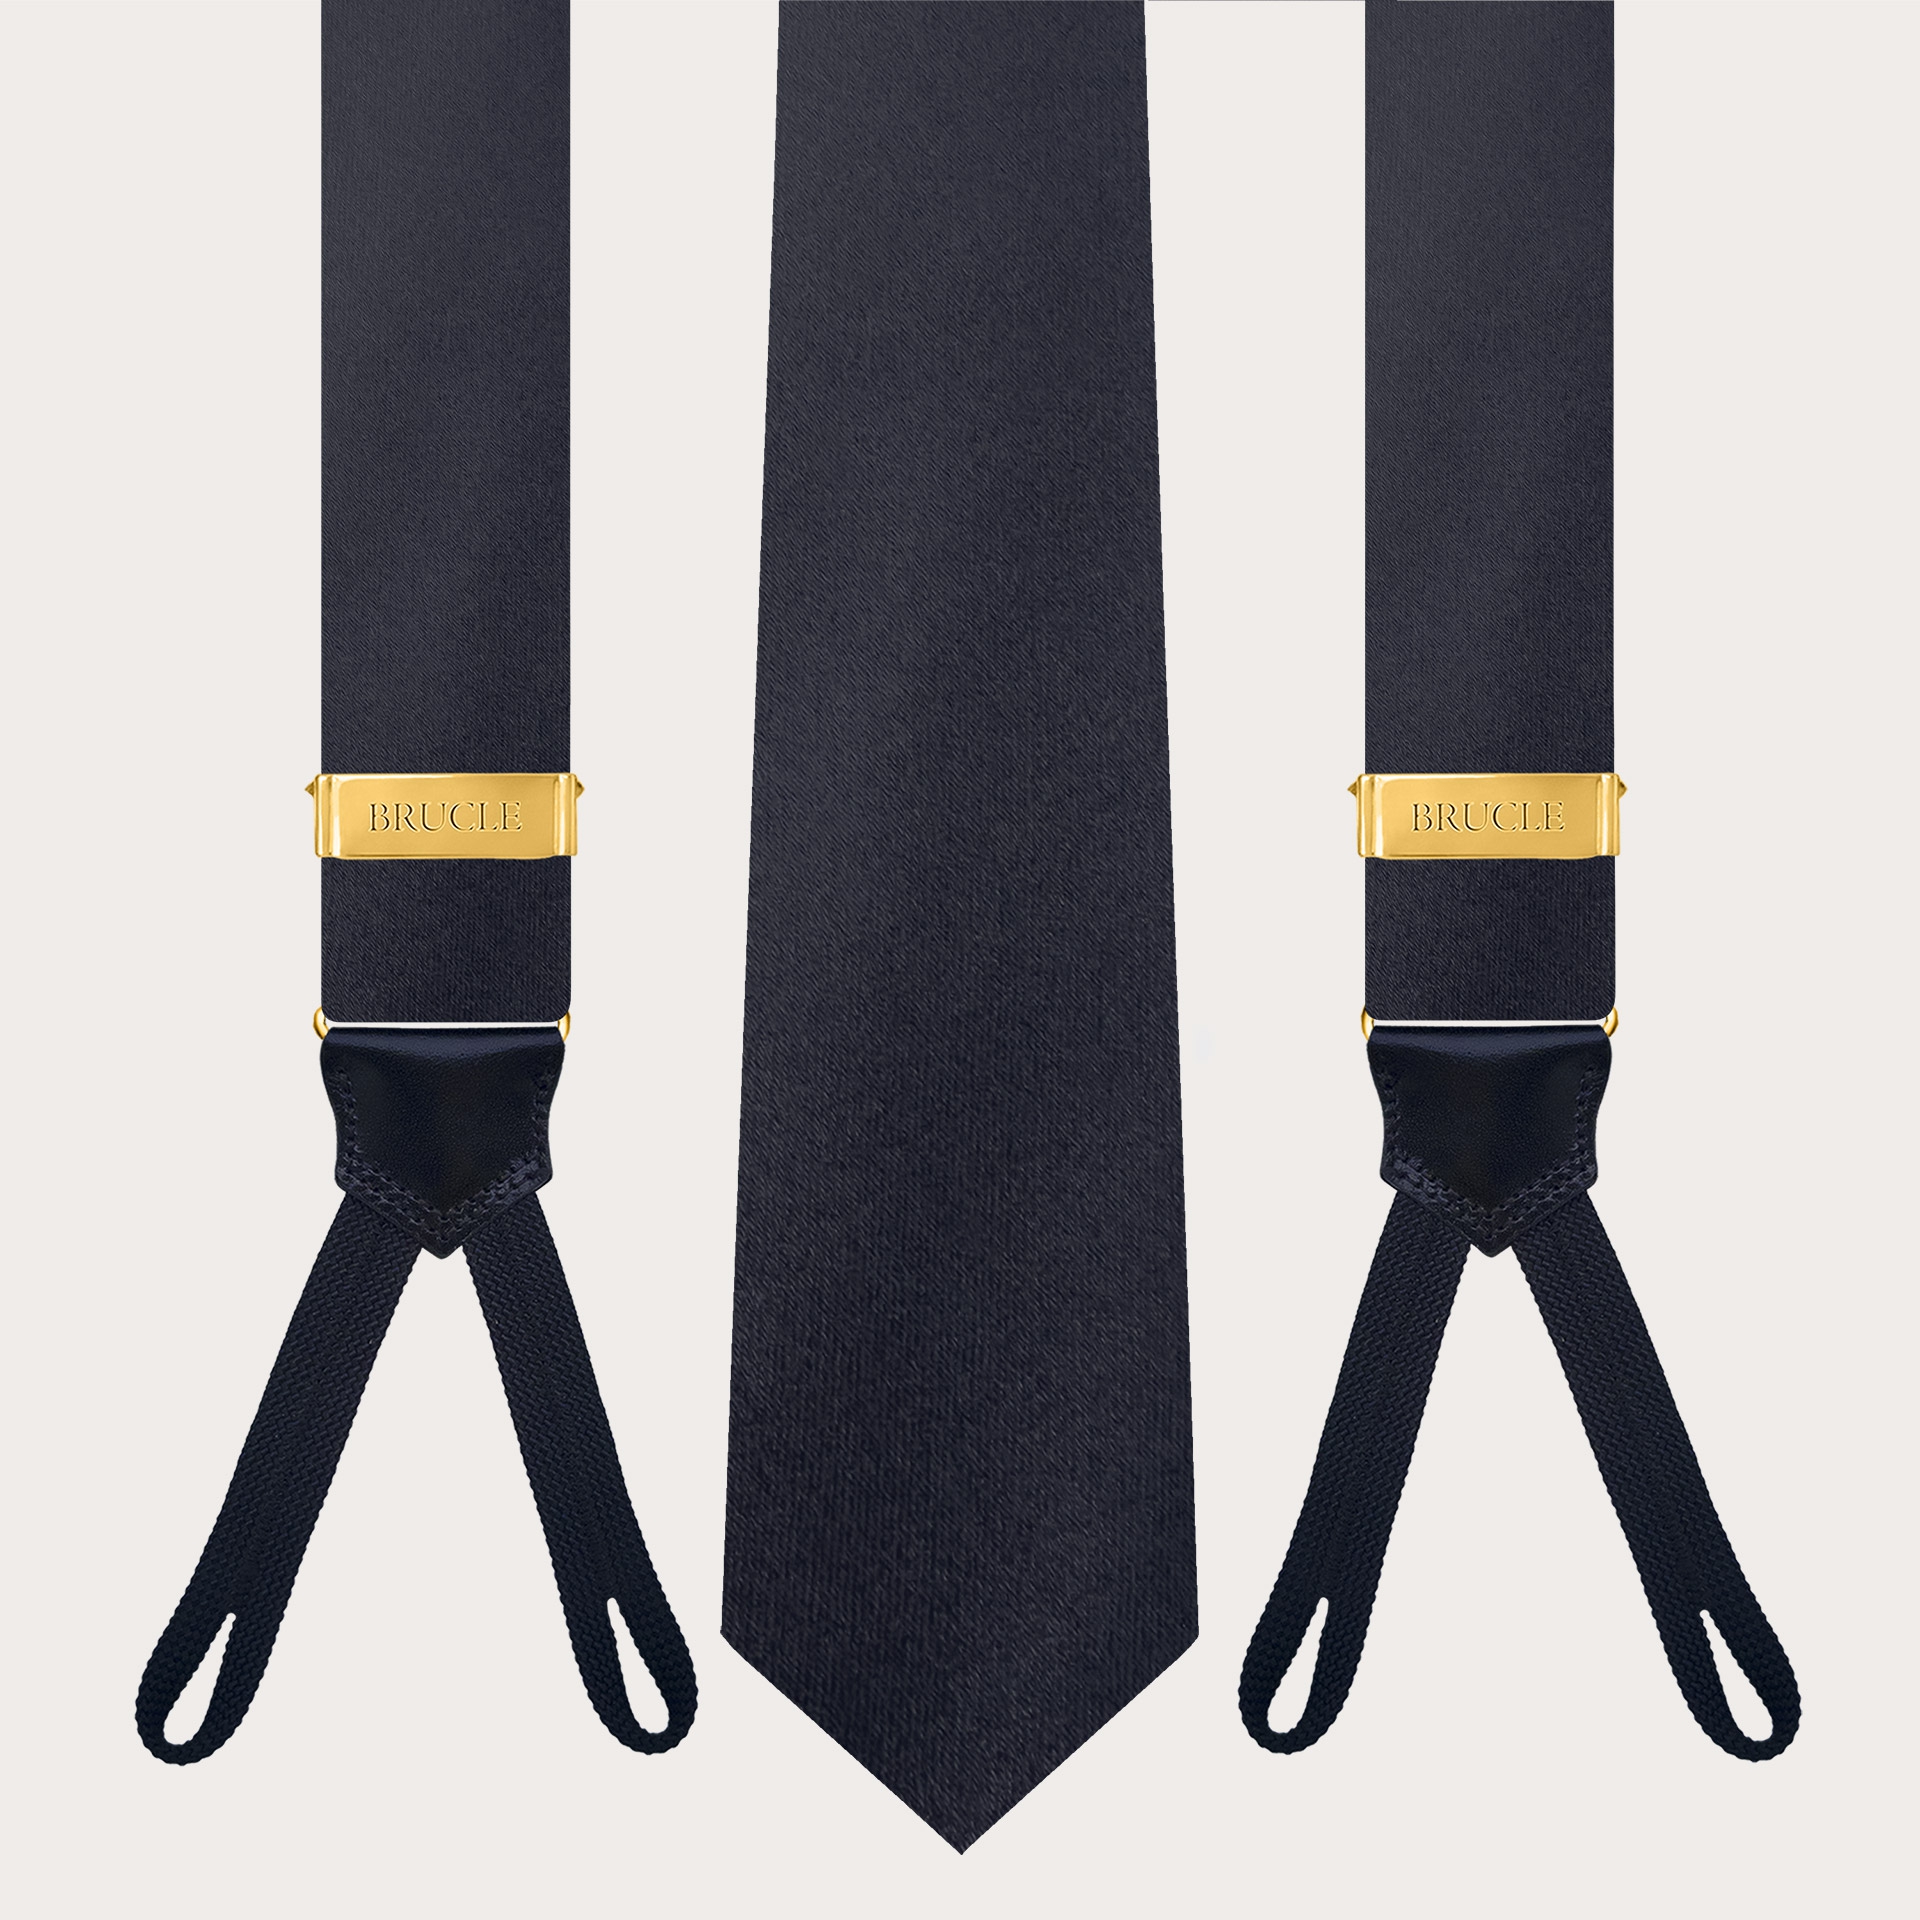 Koordiniertes Set aus Knopf-Hosenträgern und Krawatte aus marineblauem Seidensatin